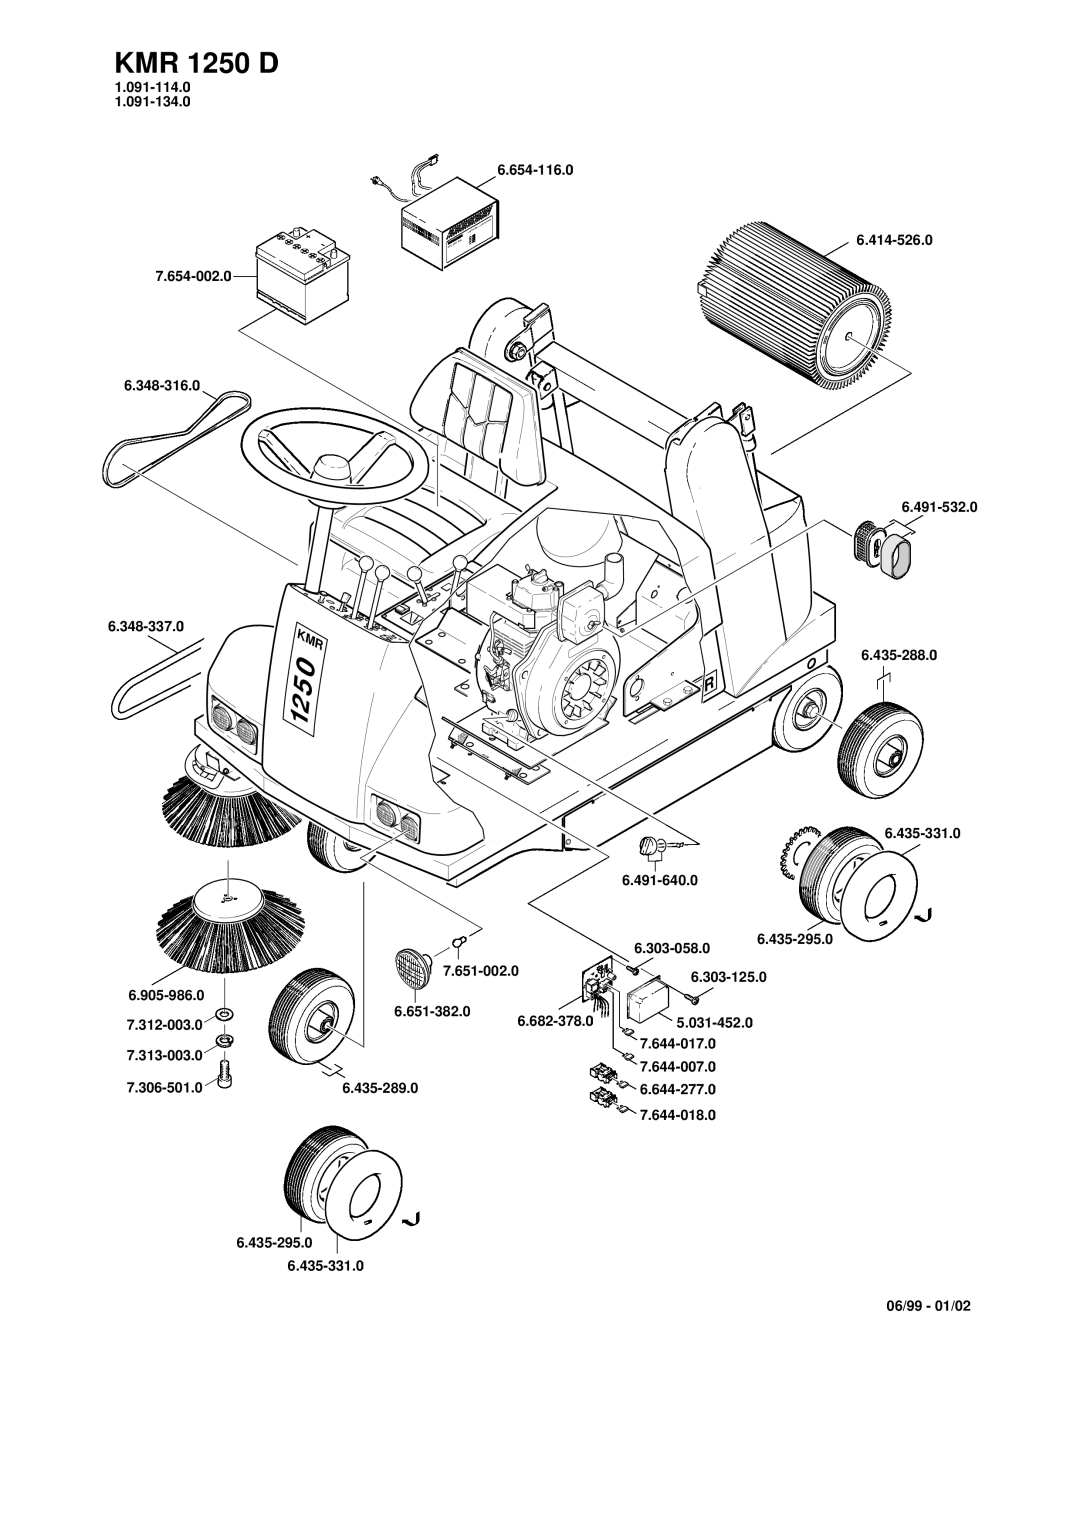 Karcher KMR 1250 D manual 